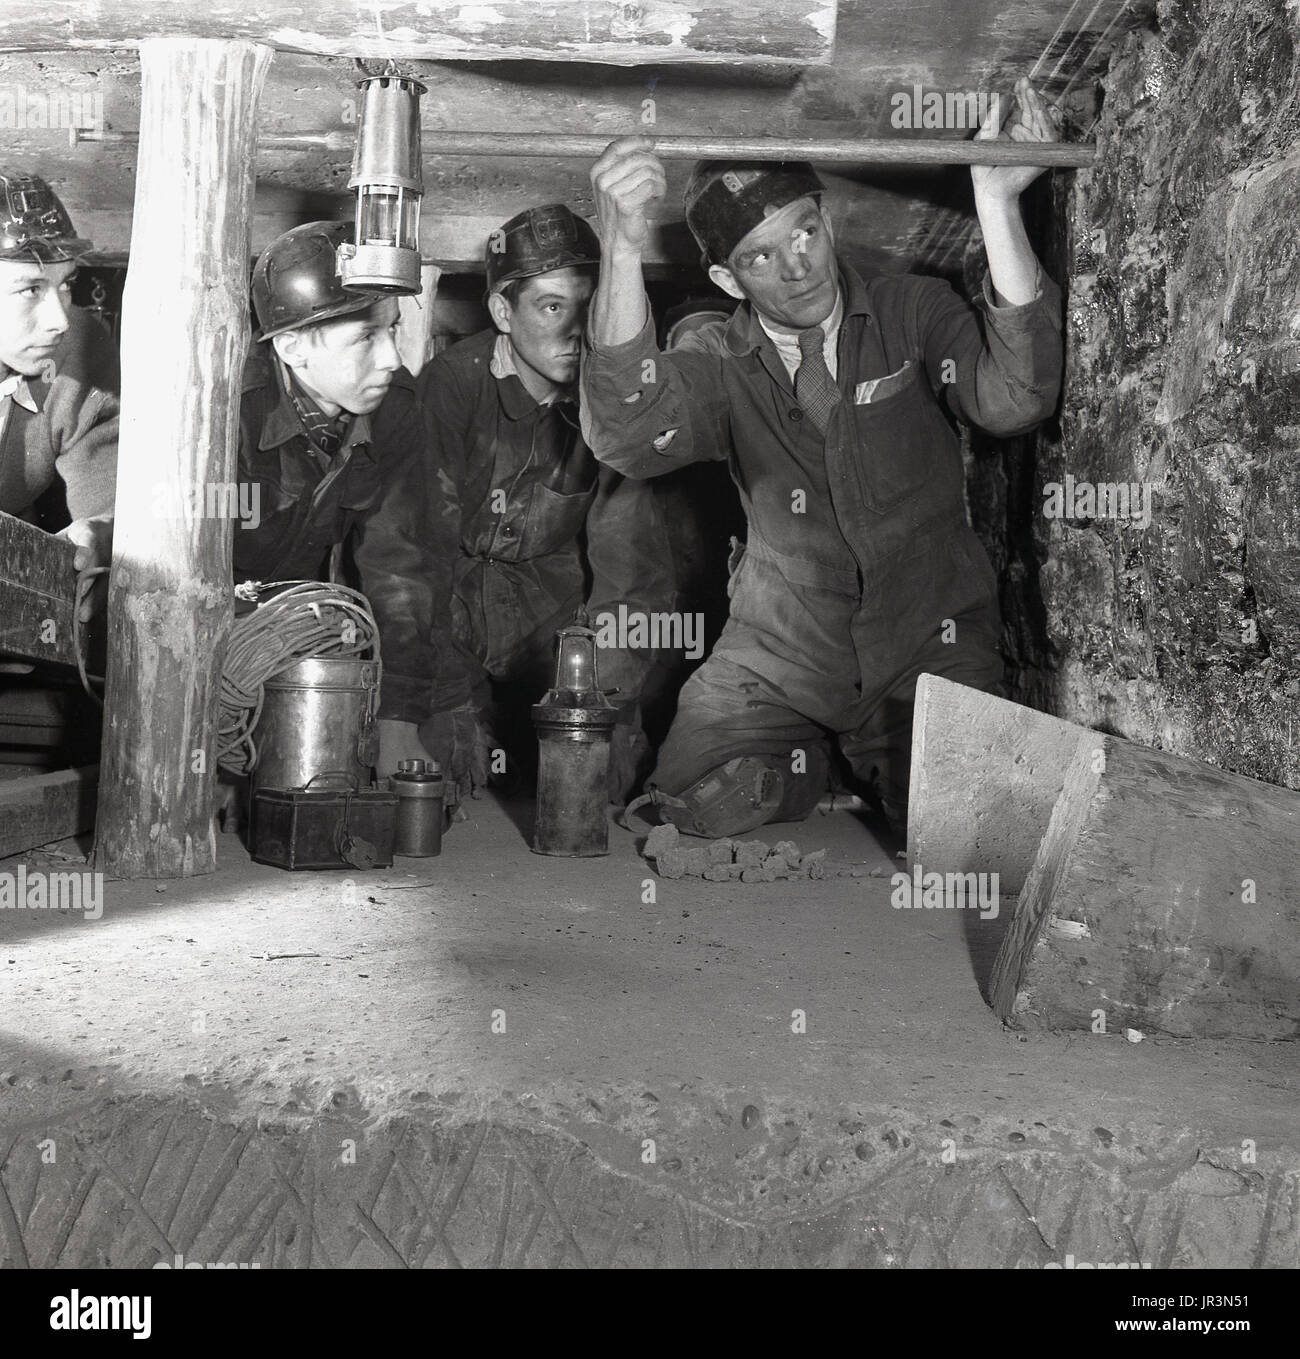 1948, storico, Inghilterra, adulti miner dimostrando ai maschi giovani apprendisti di data mining o apprendisti tecniche di data mining, usando un palo di legno per controllare la parete della miniera. Foto Stock